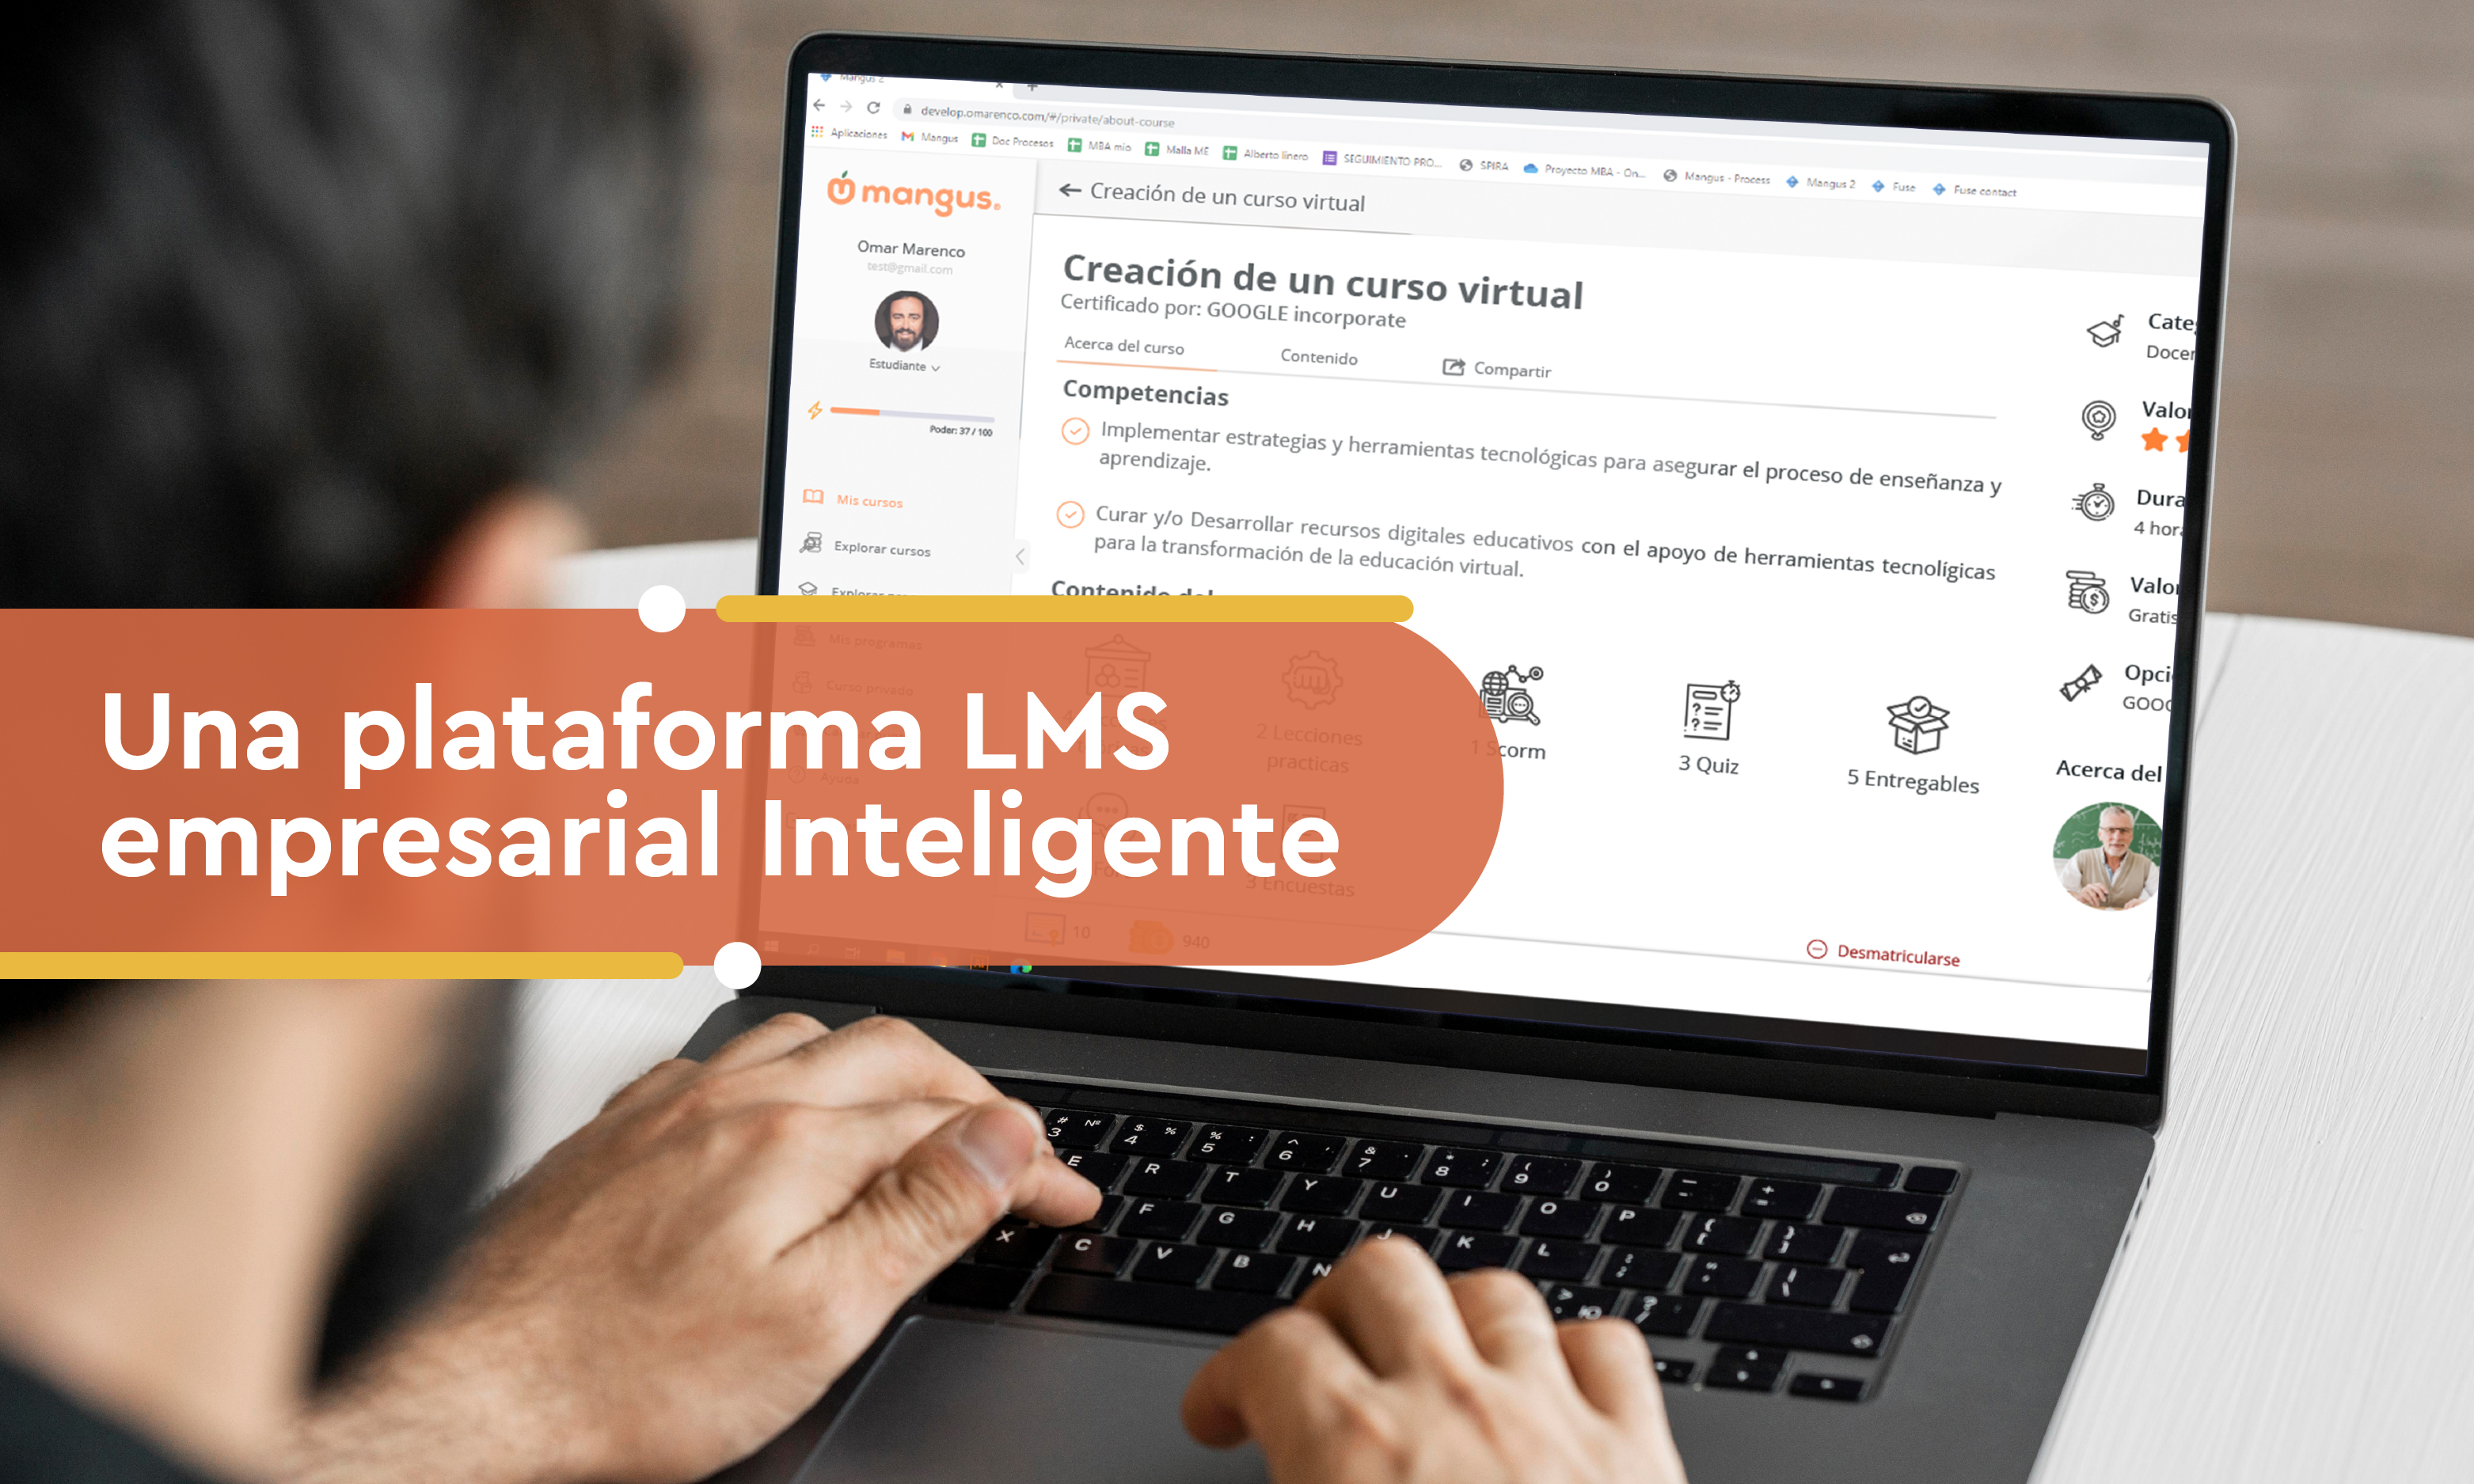 Una plataforma LMS empresarial Inteligente 